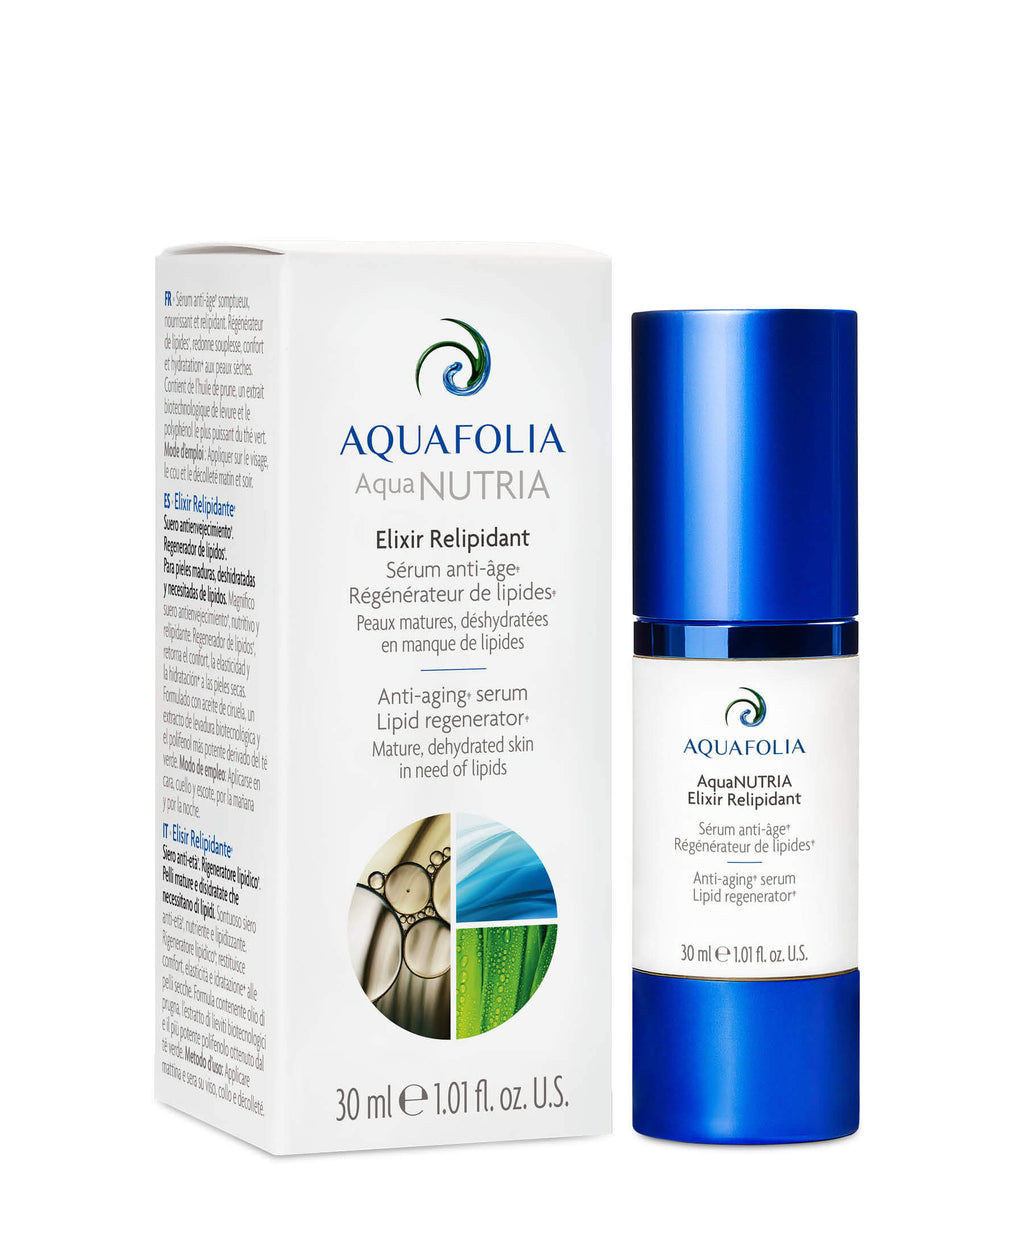 Aquafolia AquaNUTRIA Elixir Relipidant/Relipidising 30ml